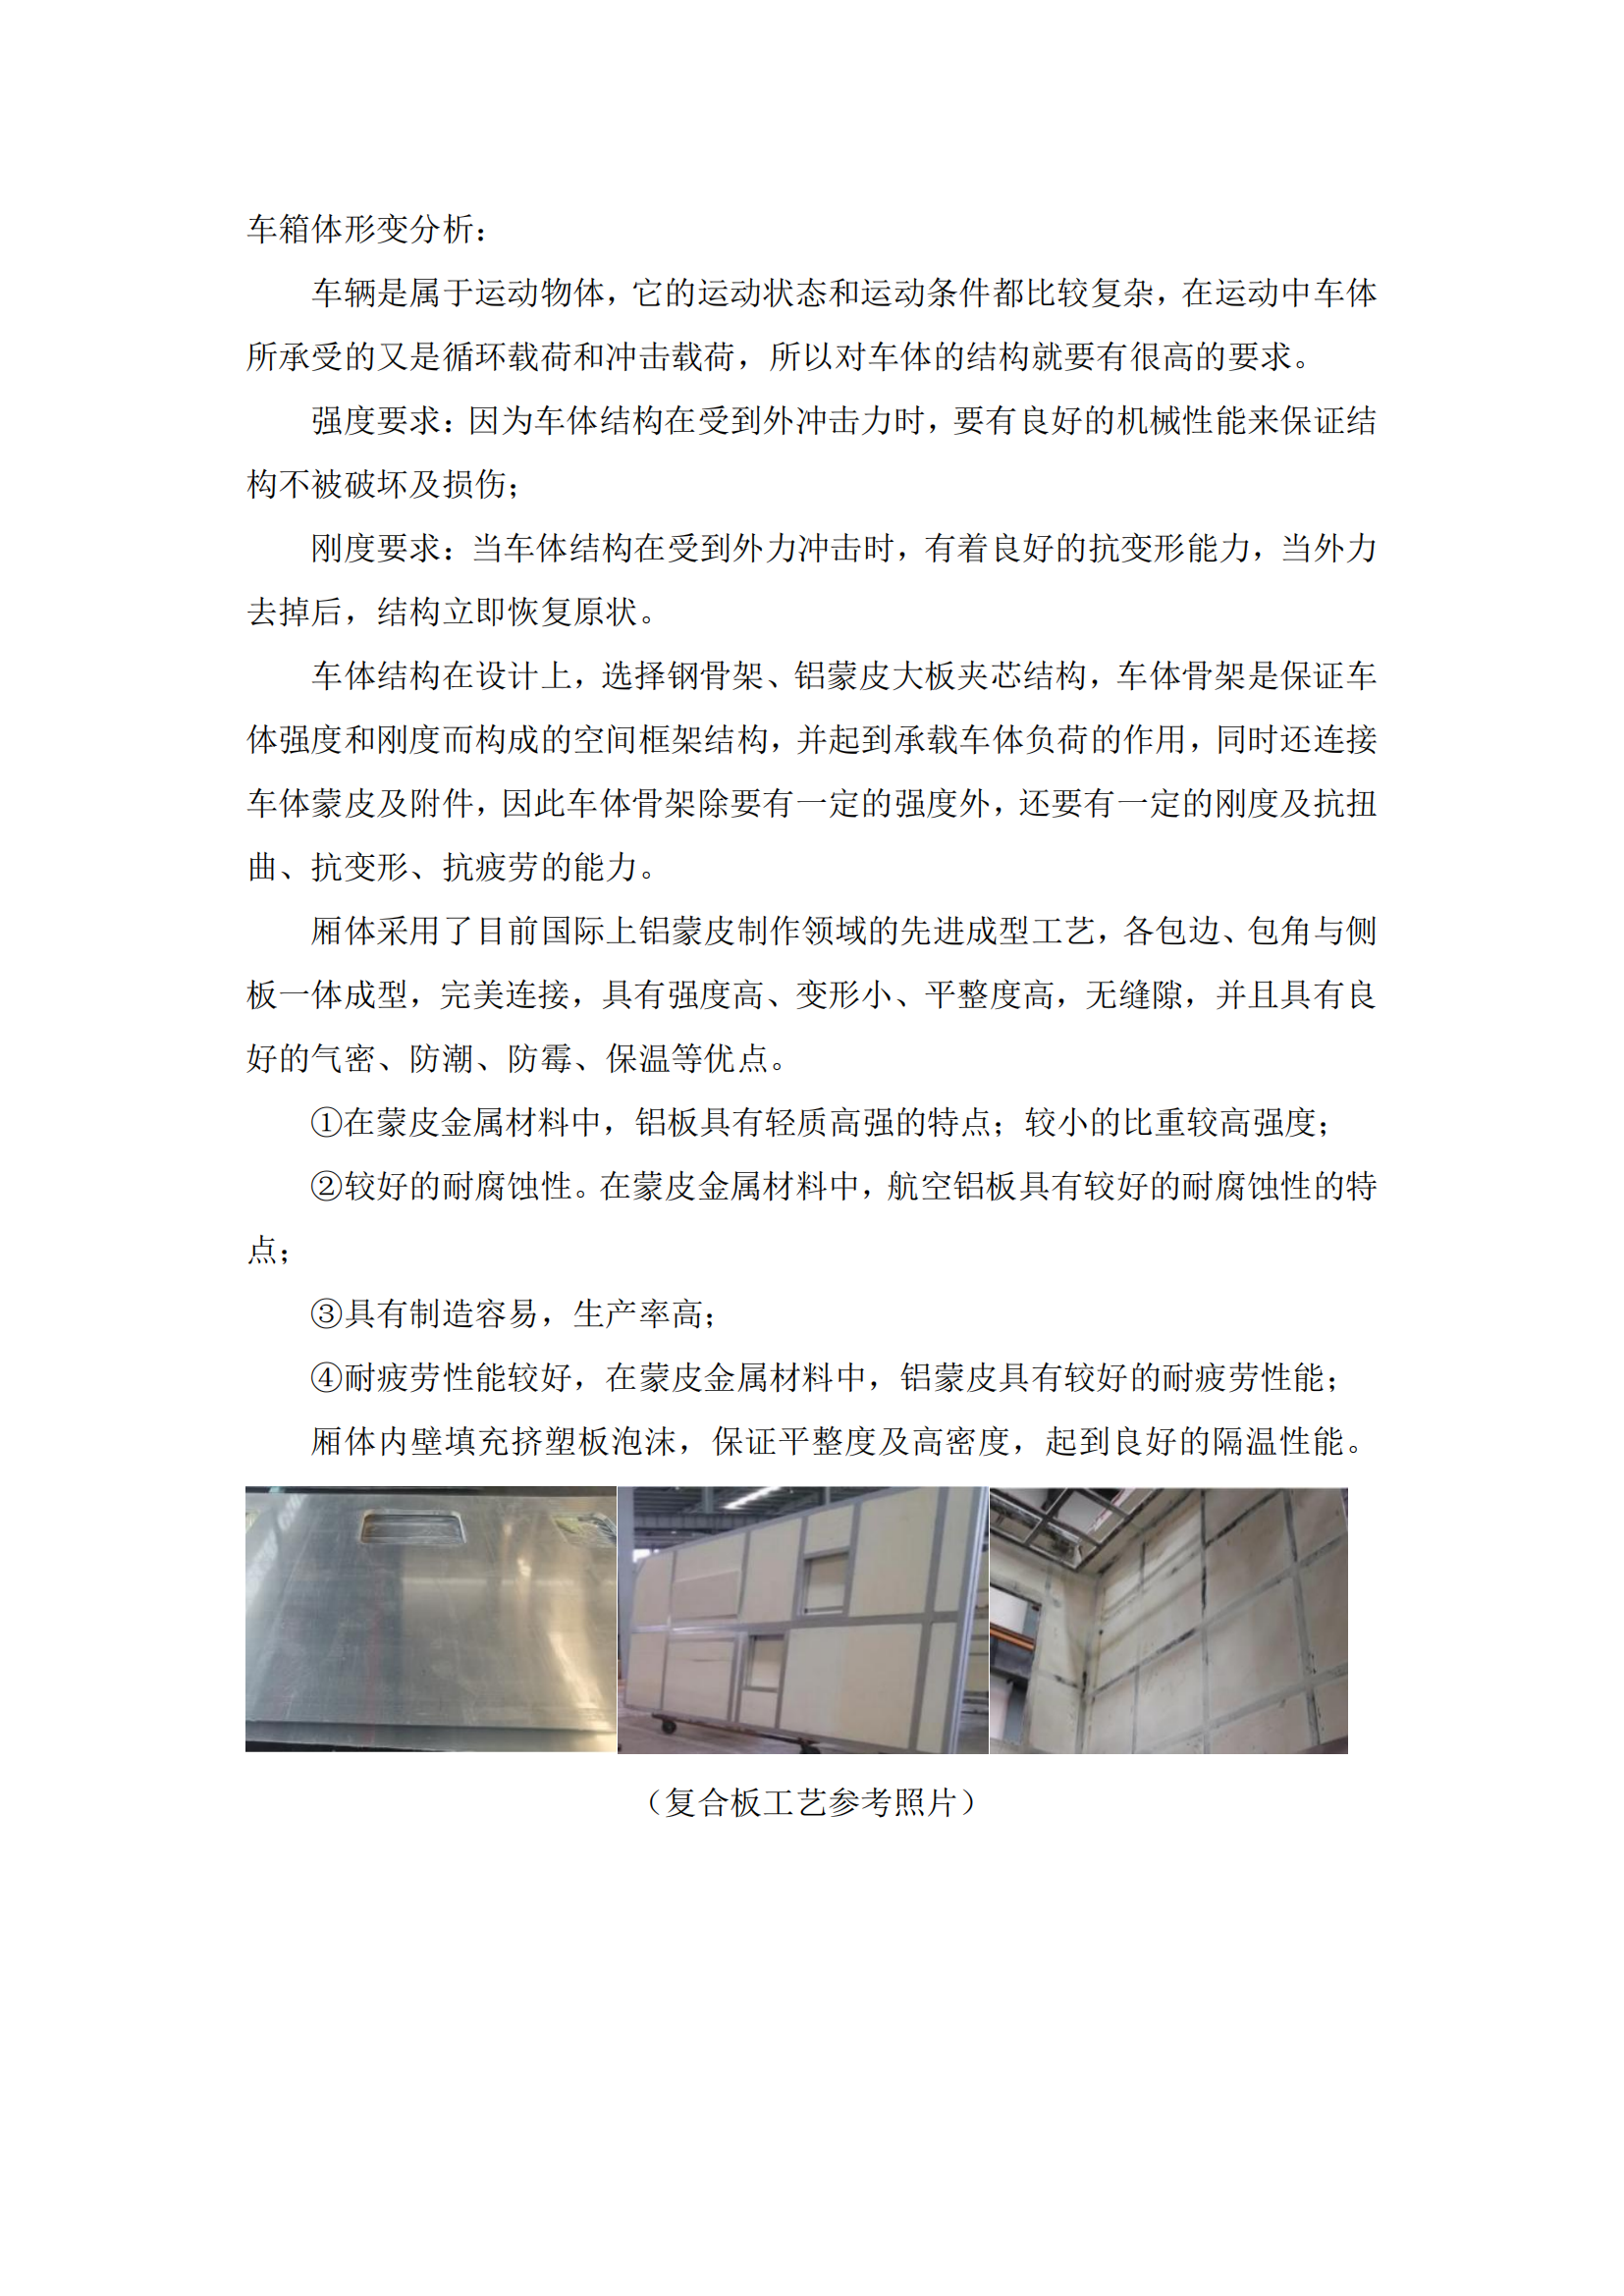 第二批次 宿营车 24人技术规格书 汕德 卡(金广)_22.png